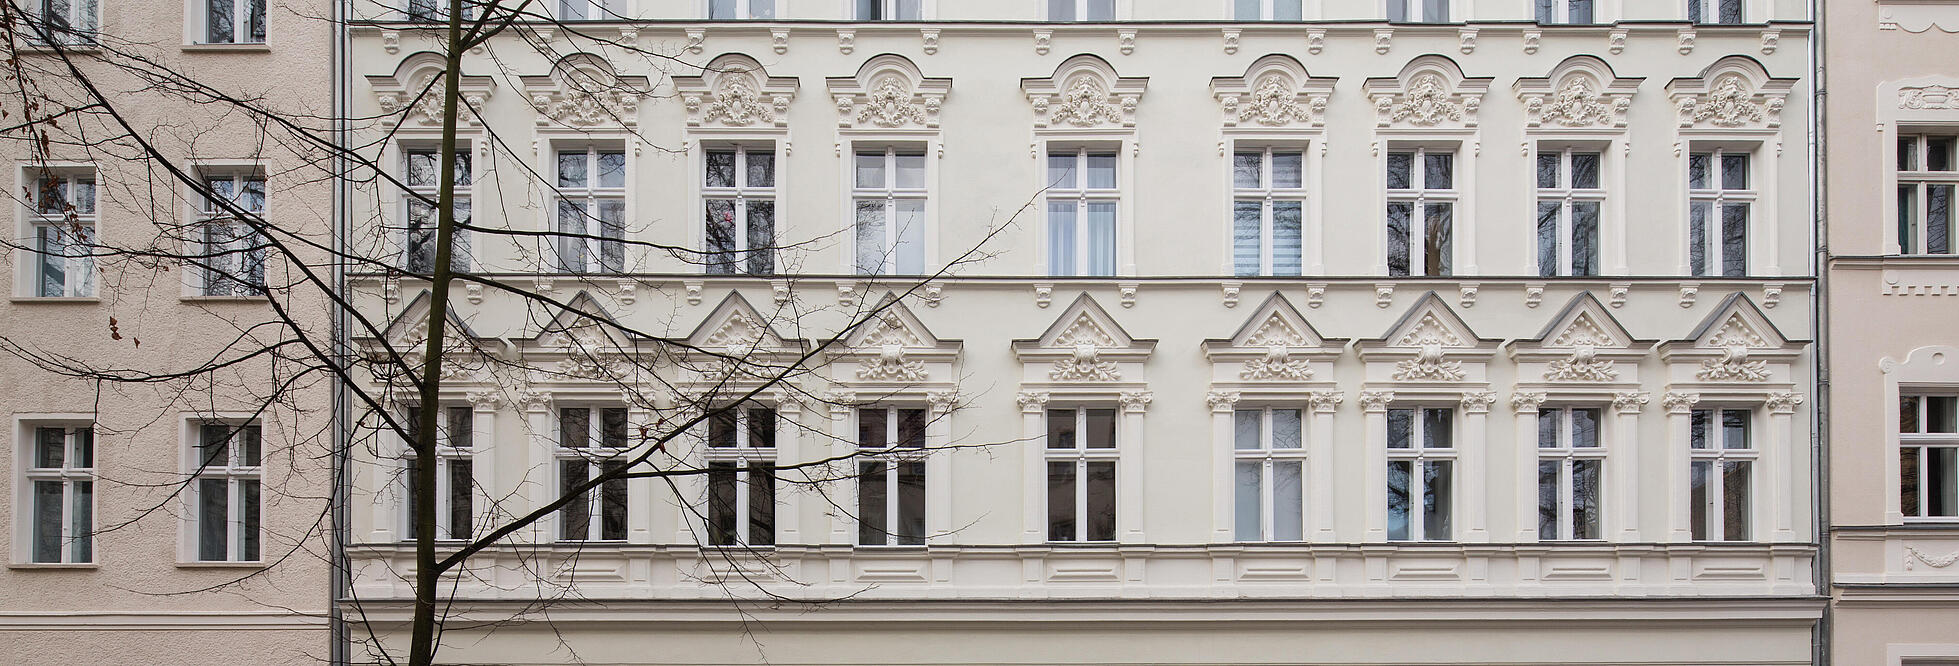 Außenaufnahme zeigt die Fassade der Streustraße, ein mehrstöckiger Altbau